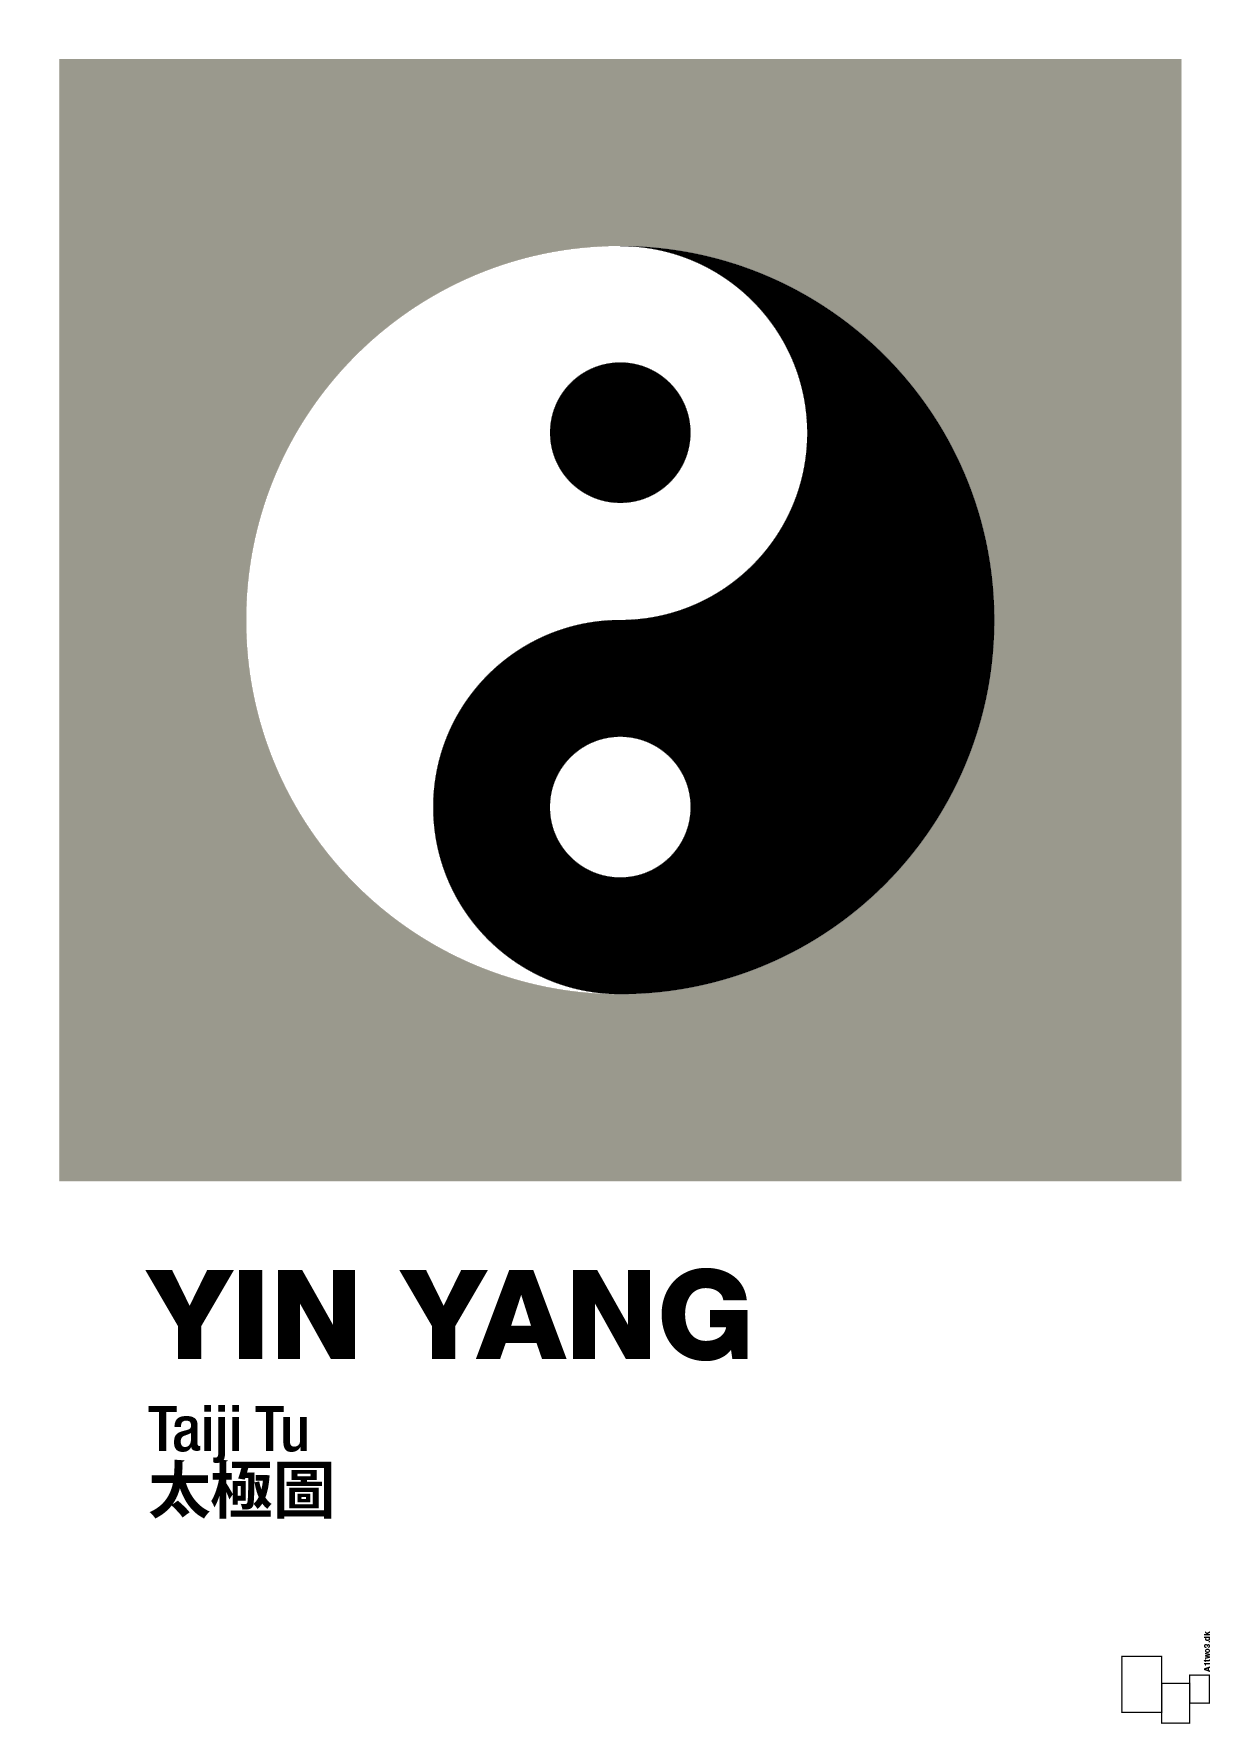 yin yang - Plakat med Videnskab i Battleship Gray